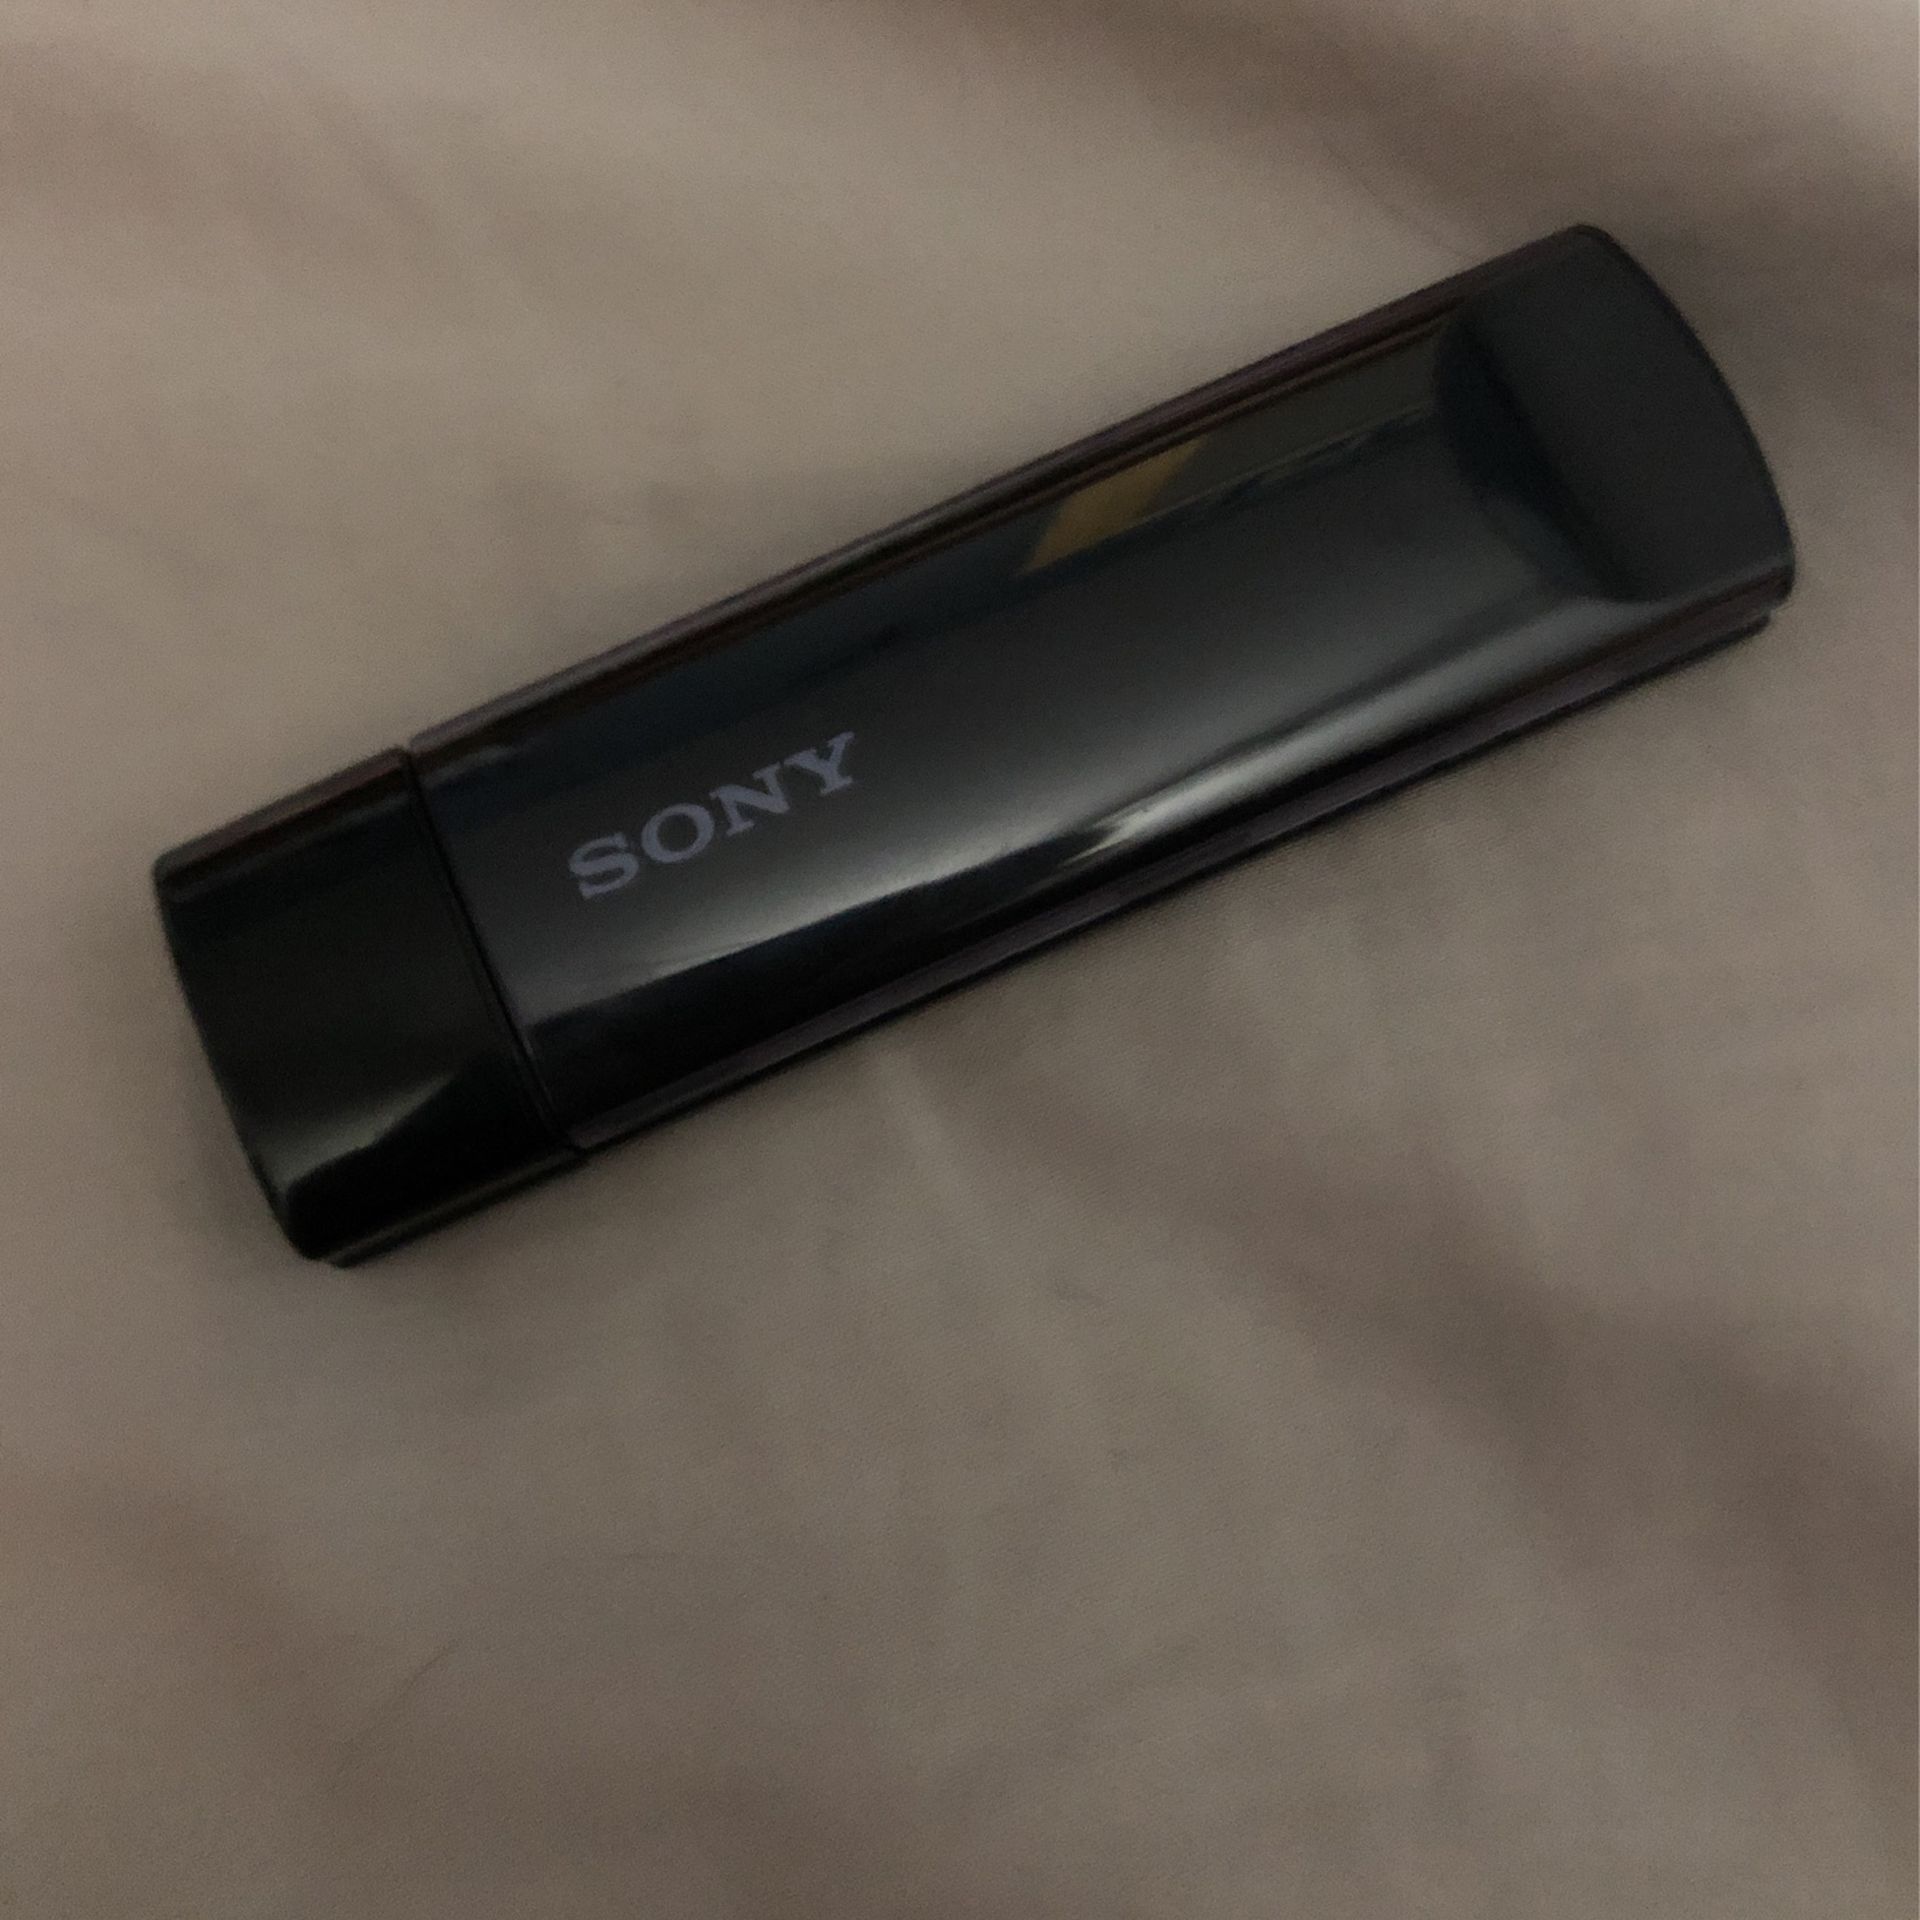 Sony USB Wireless LAN Adapter